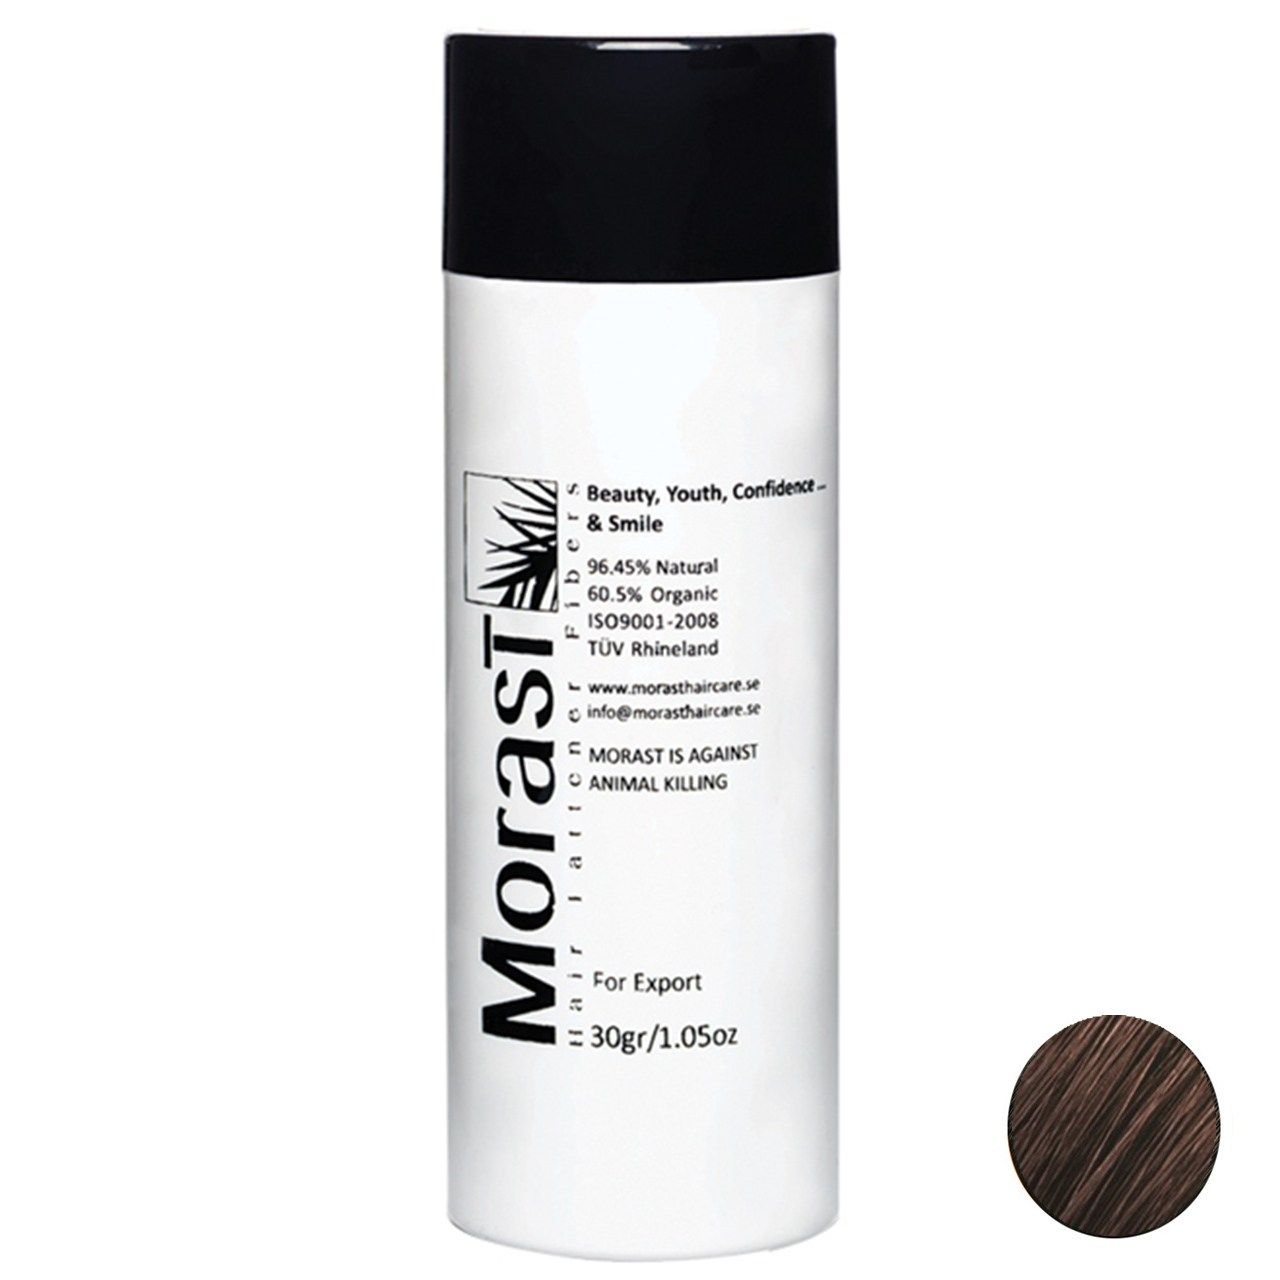 پودر پرپشت کننده مو مورست مدل Dark Brown وزن 30 گرم رنگ قهوه ای تیره -  - 1